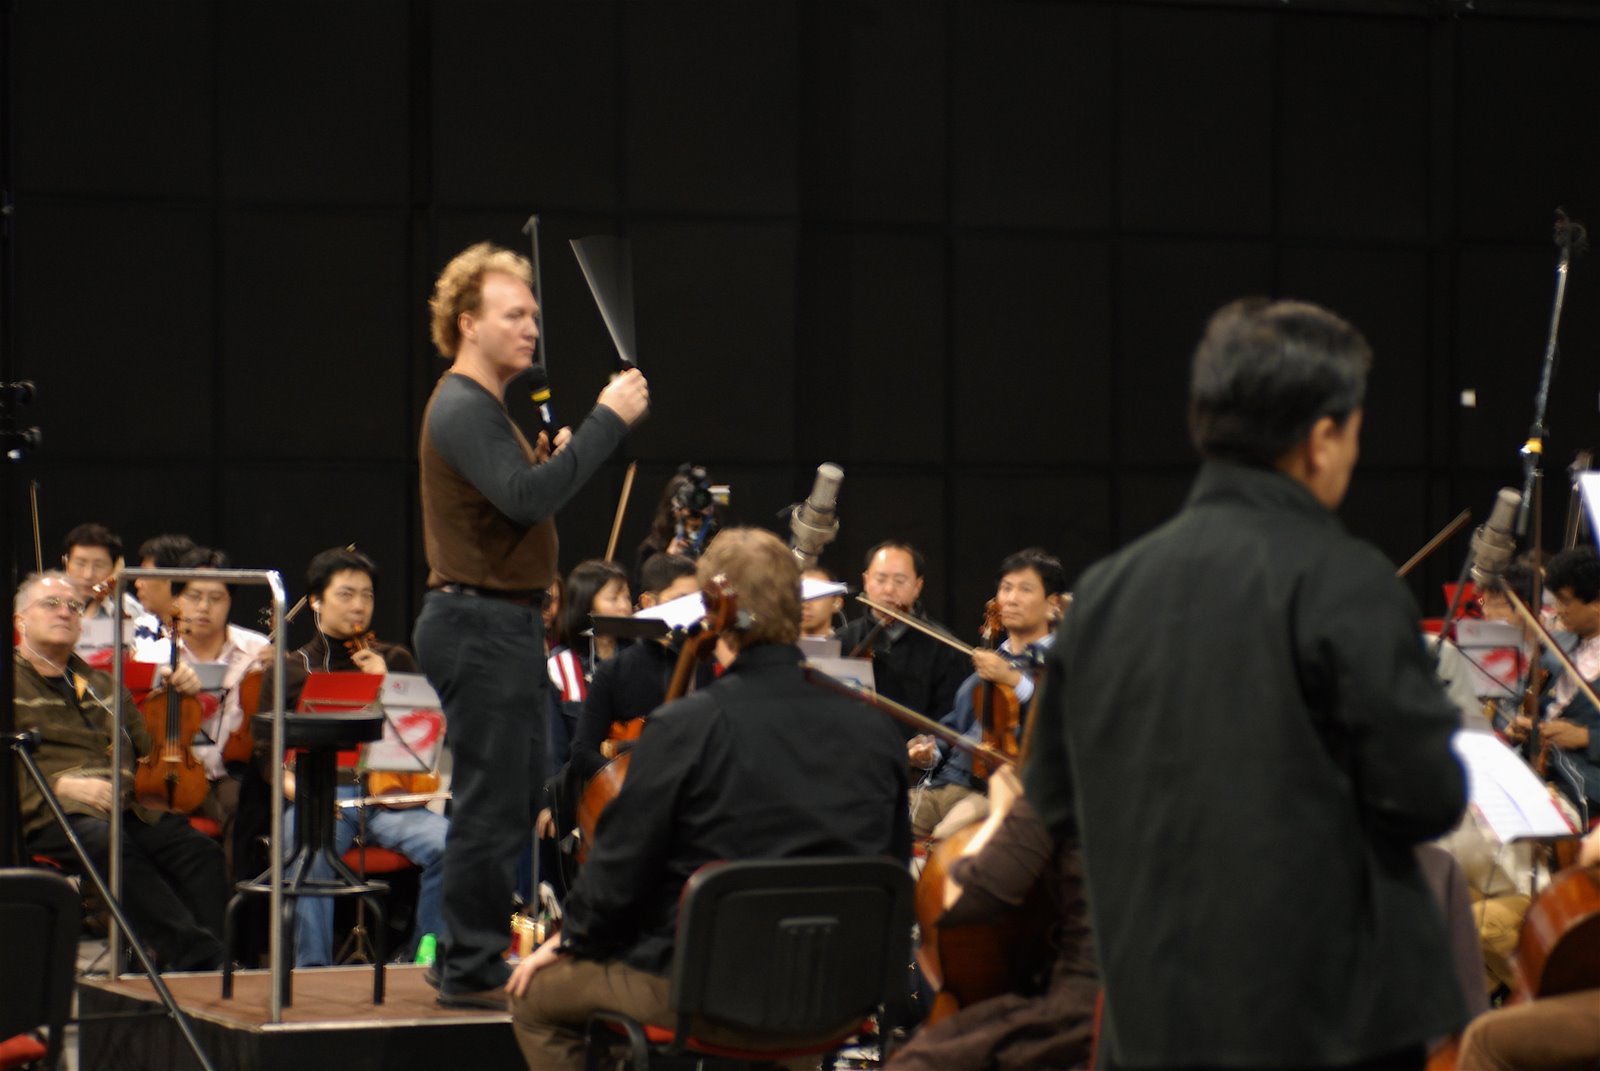 Robert conducting the Hong Kong Philharmonic Orchestra at Shaw Studios.